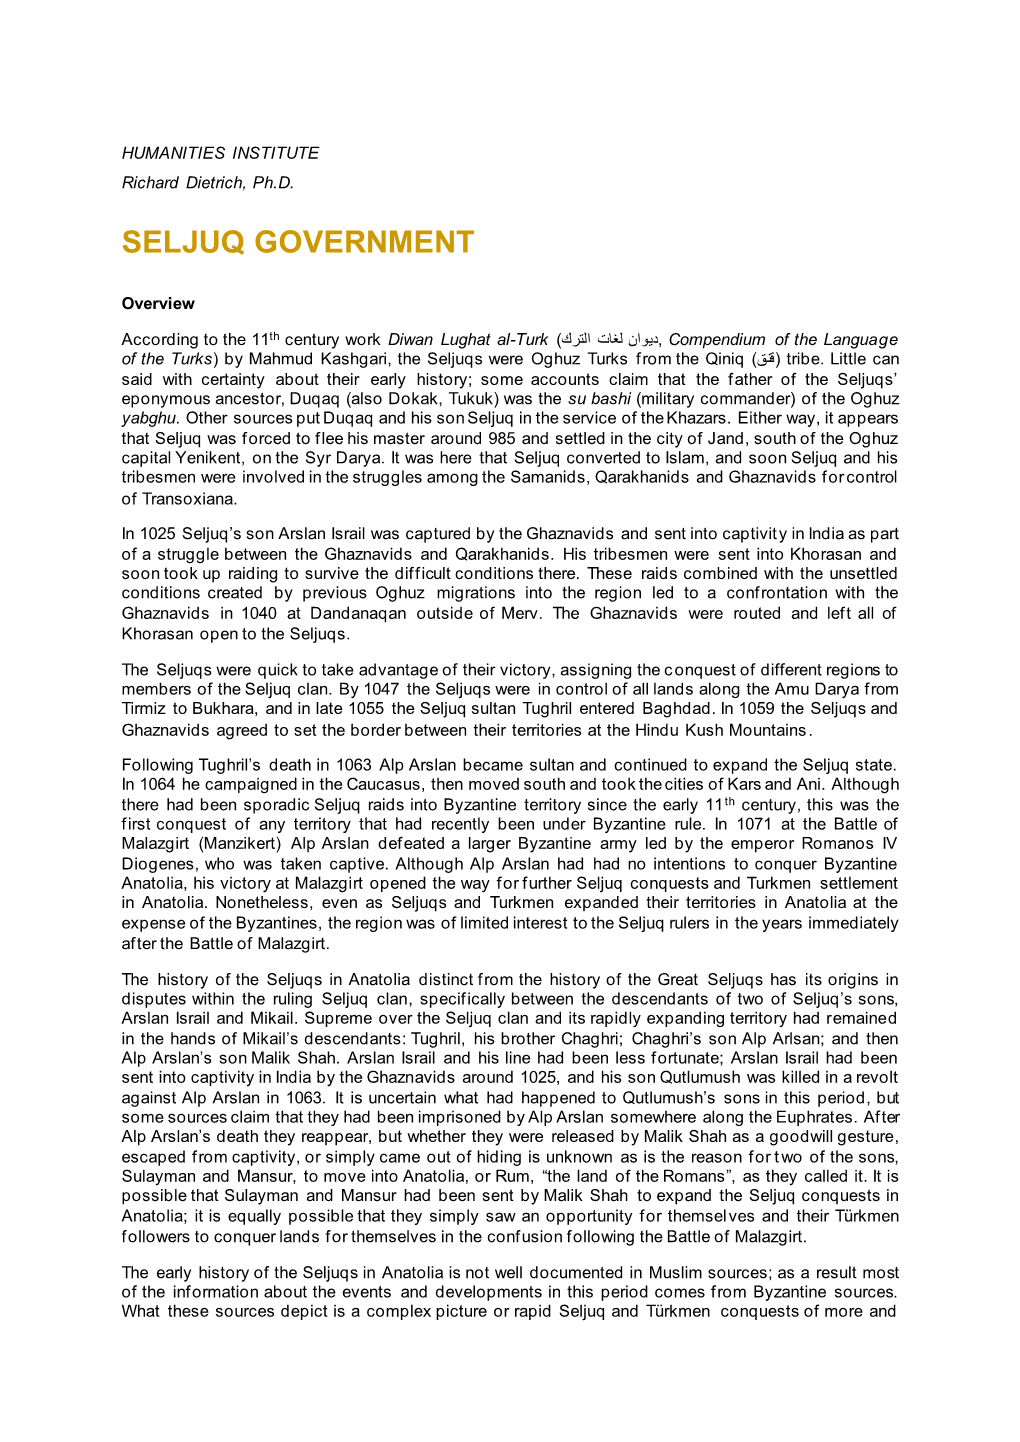 Seljuq Government